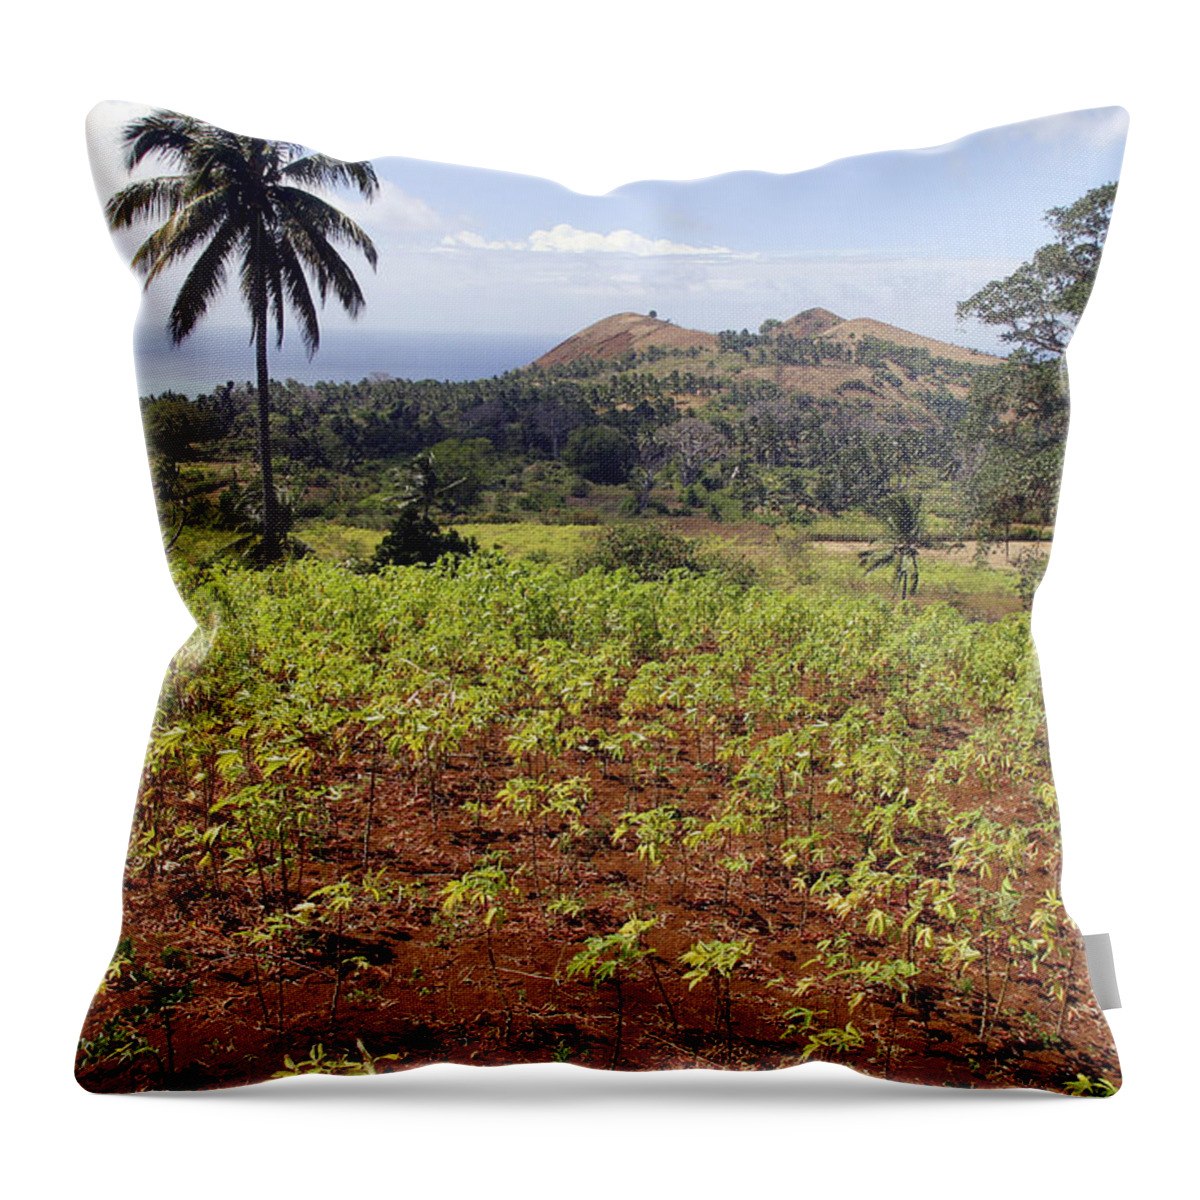 Cassava Throw Pillow featuring the photograph Cassava Crop by M. Watson